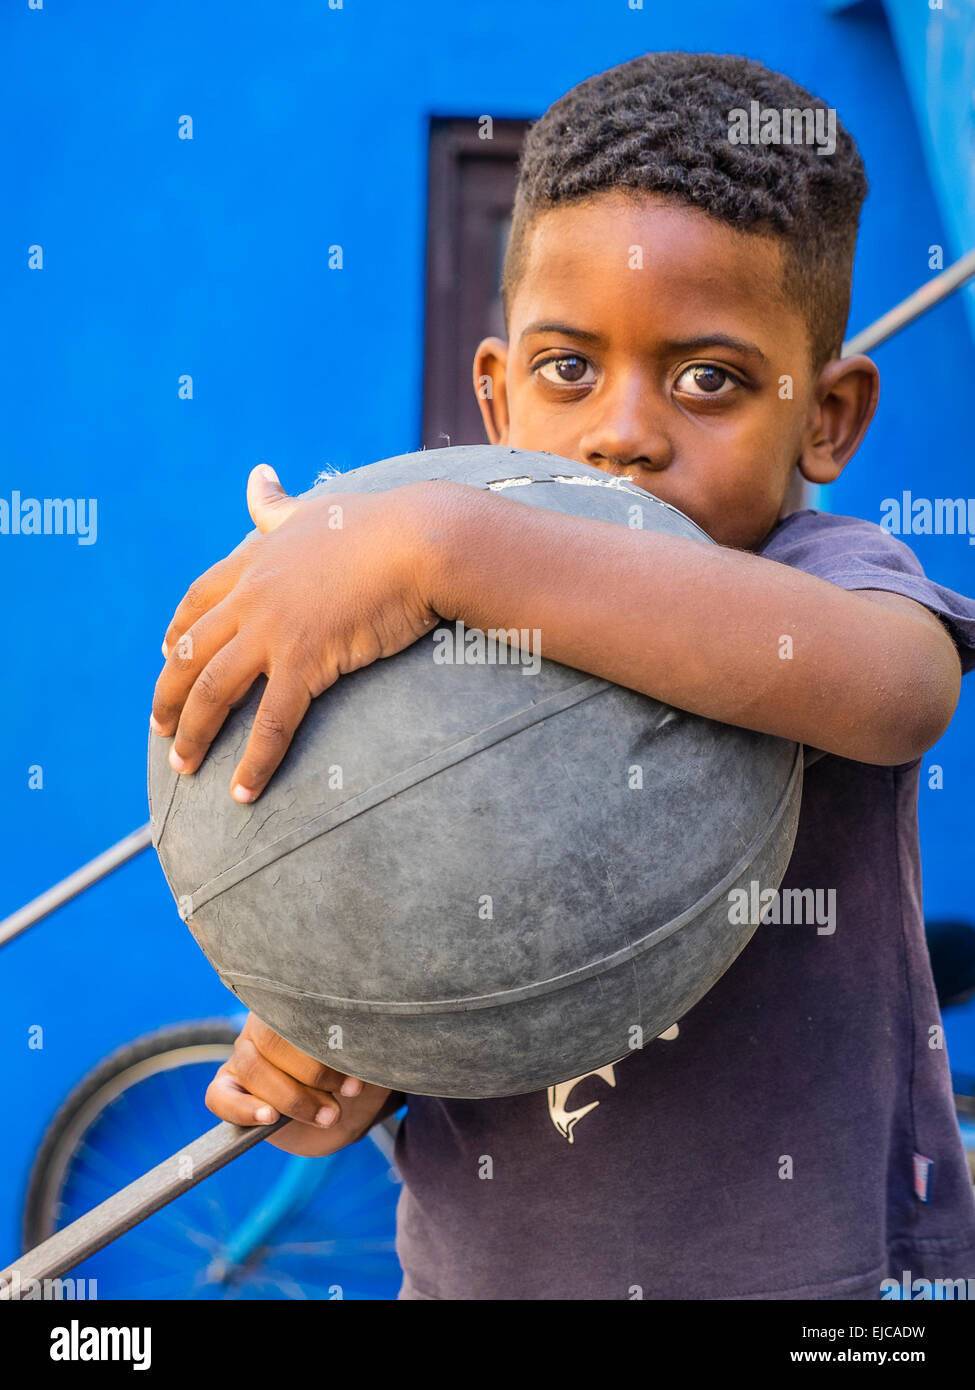 Un ragazzo afro-cubane tenendo un vecchio battere fino a basket in un braccio e nella parte anteriore del suo corpo rivolta in avanti contro il muro di blu. Foto Stock